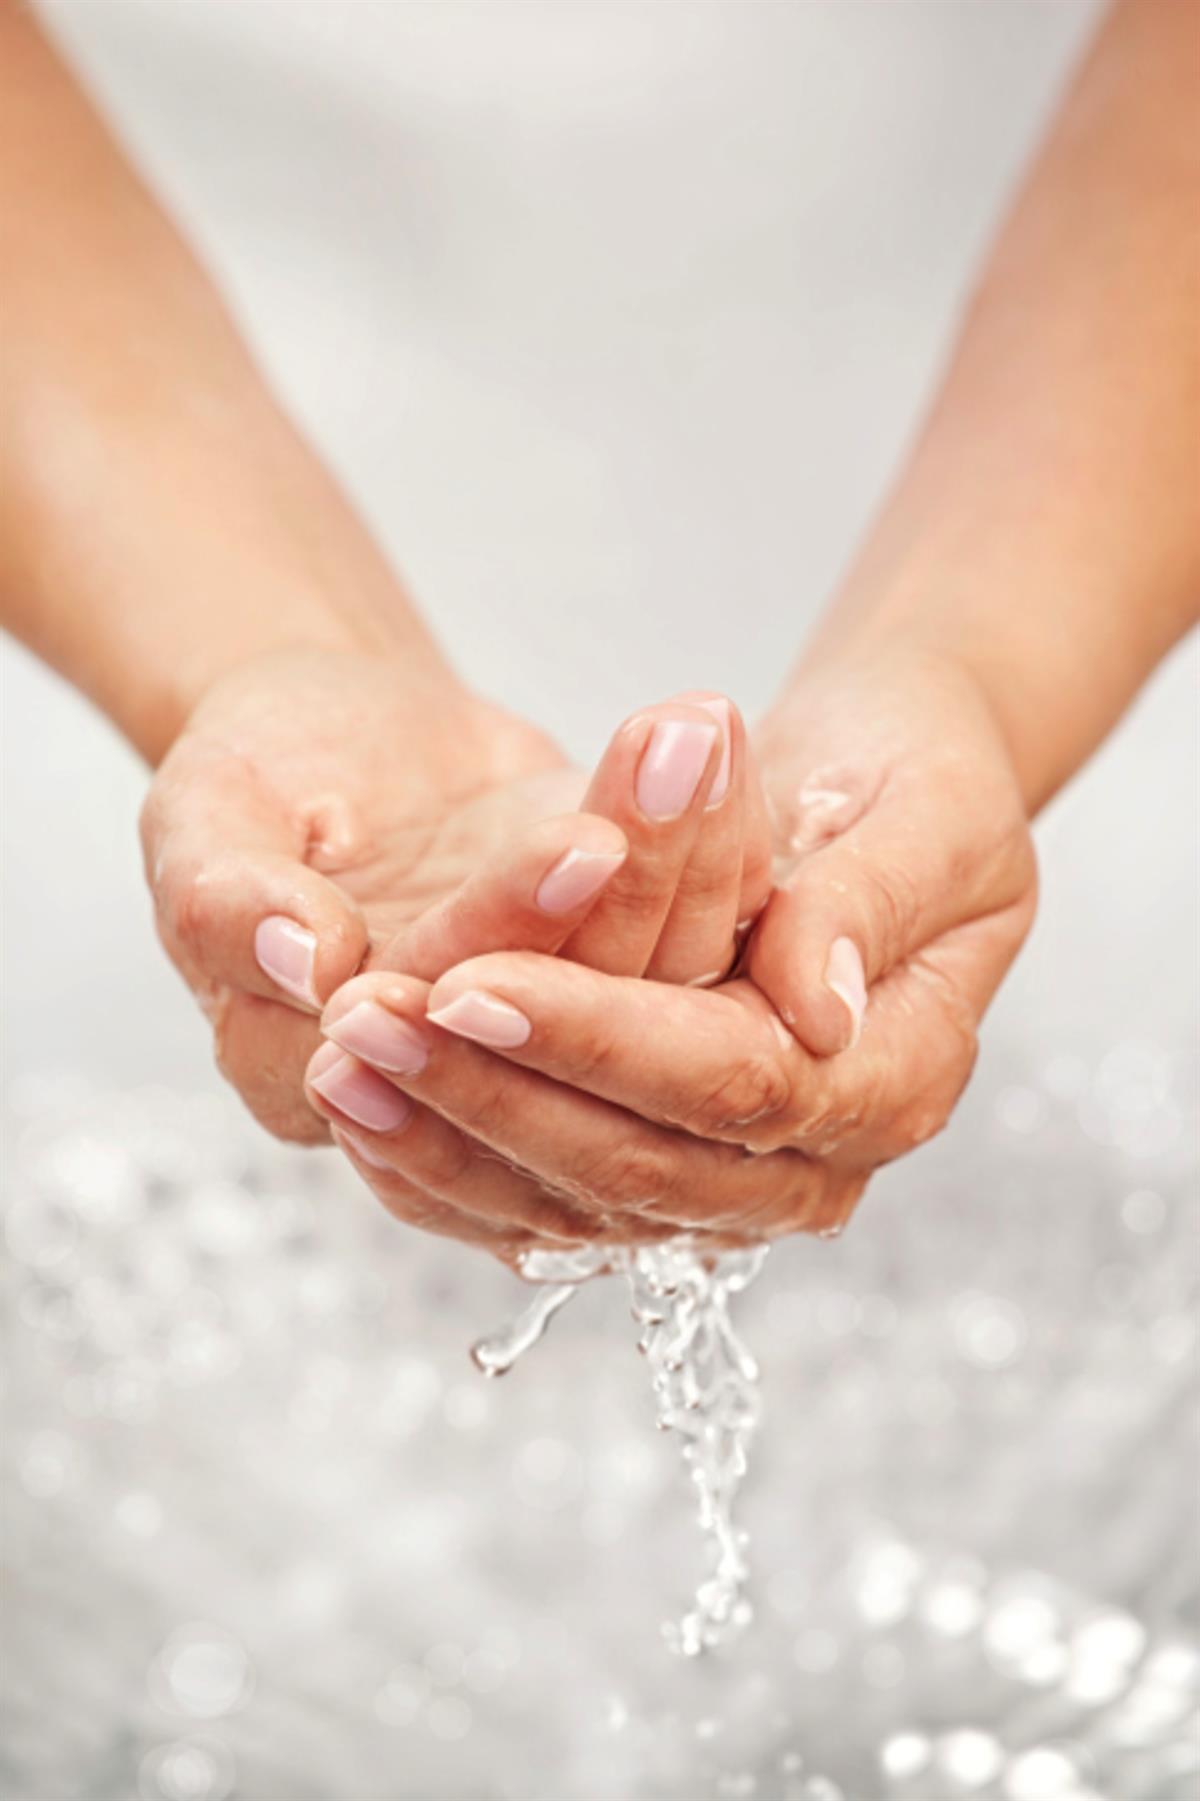 Händewaschen ist wichtig, um Krankheiten zu vermeiden.